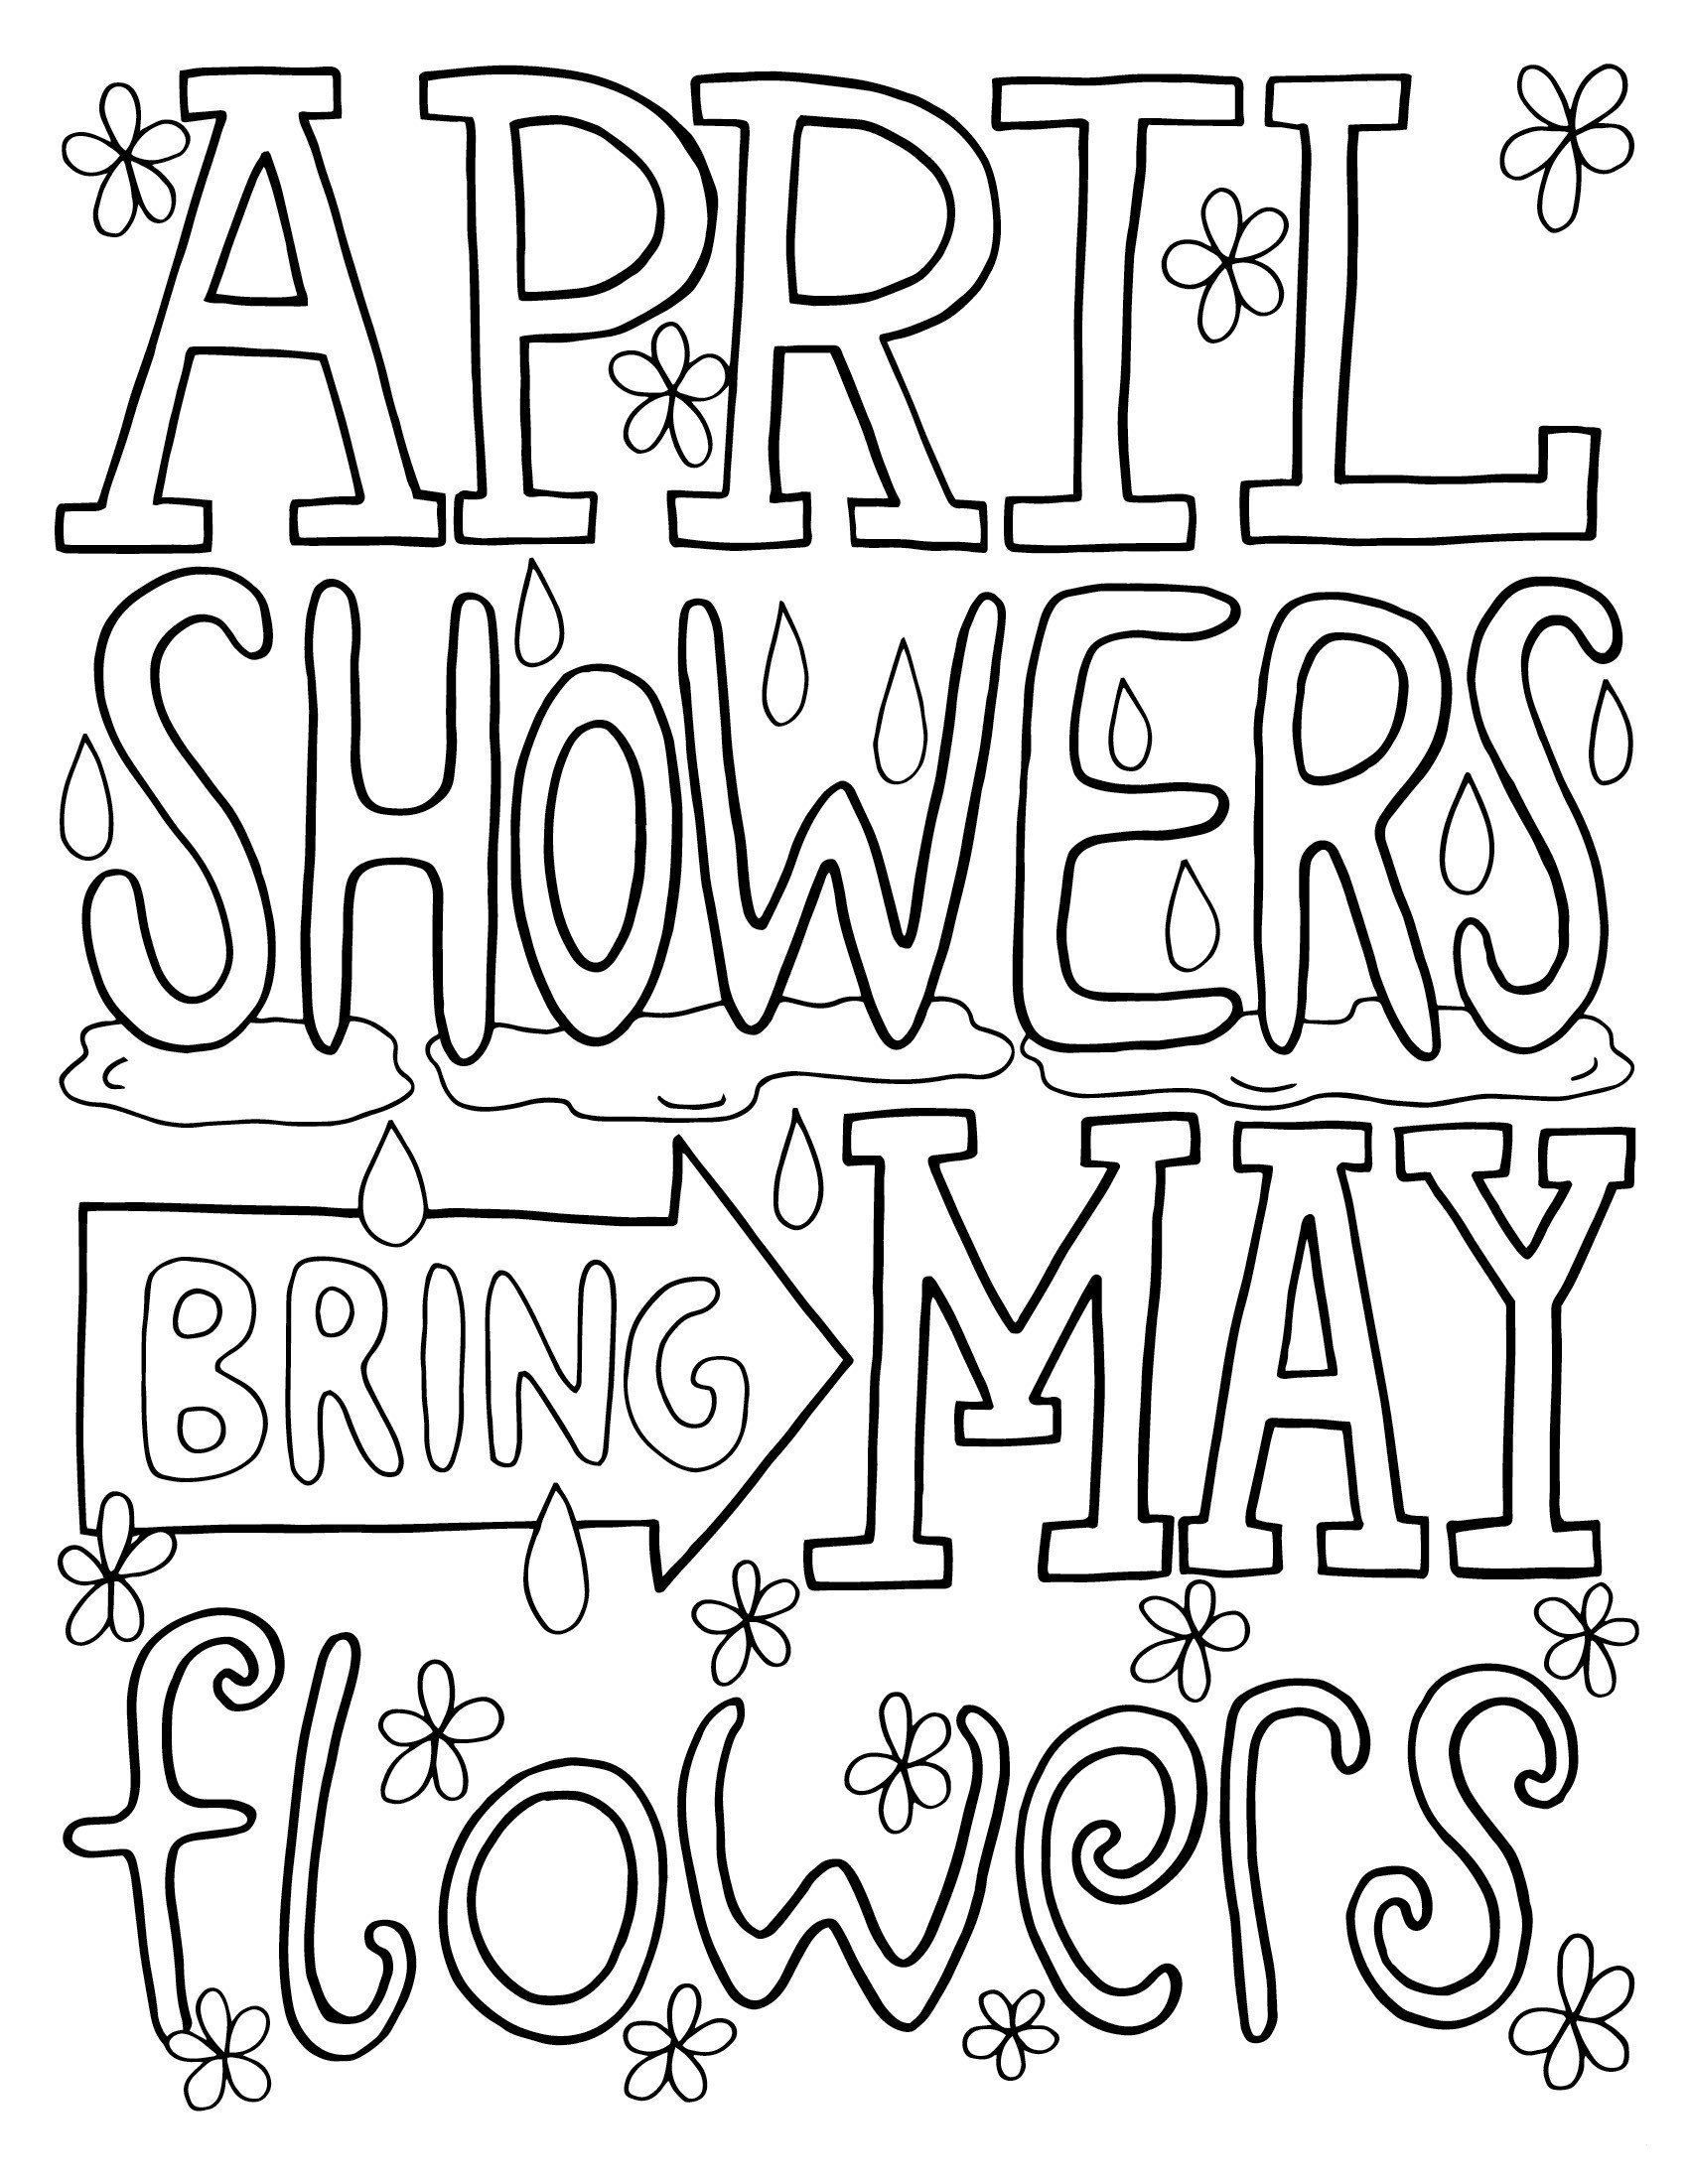 April Showerss Coloring Page